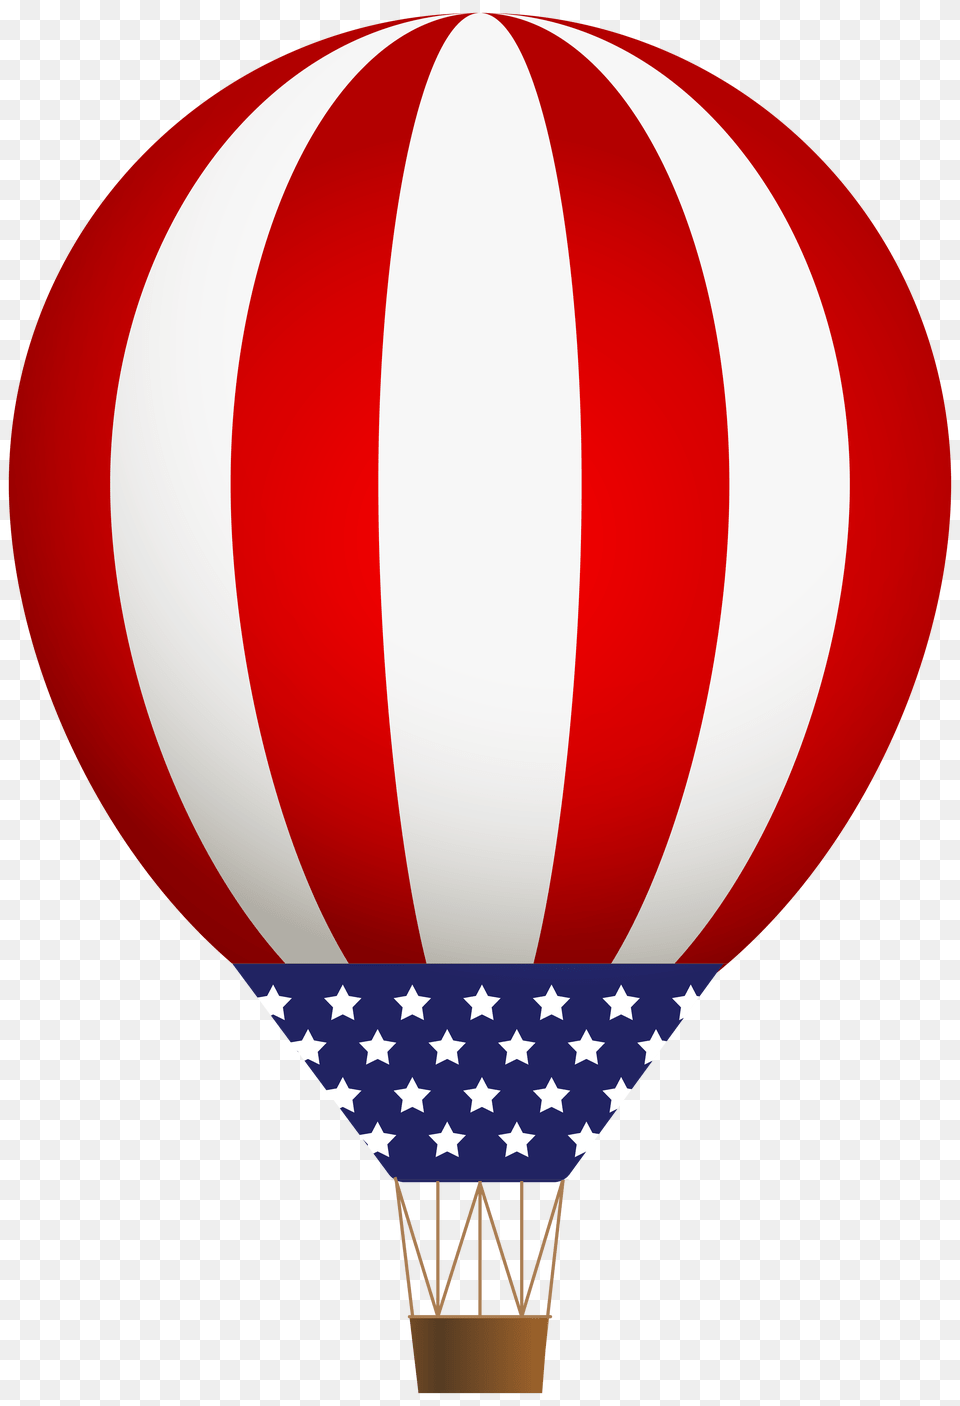 Usa Air Baloon Clip Art, Aircraft, Transportation, Vehicle, Hot Air Balloon Free Png Download